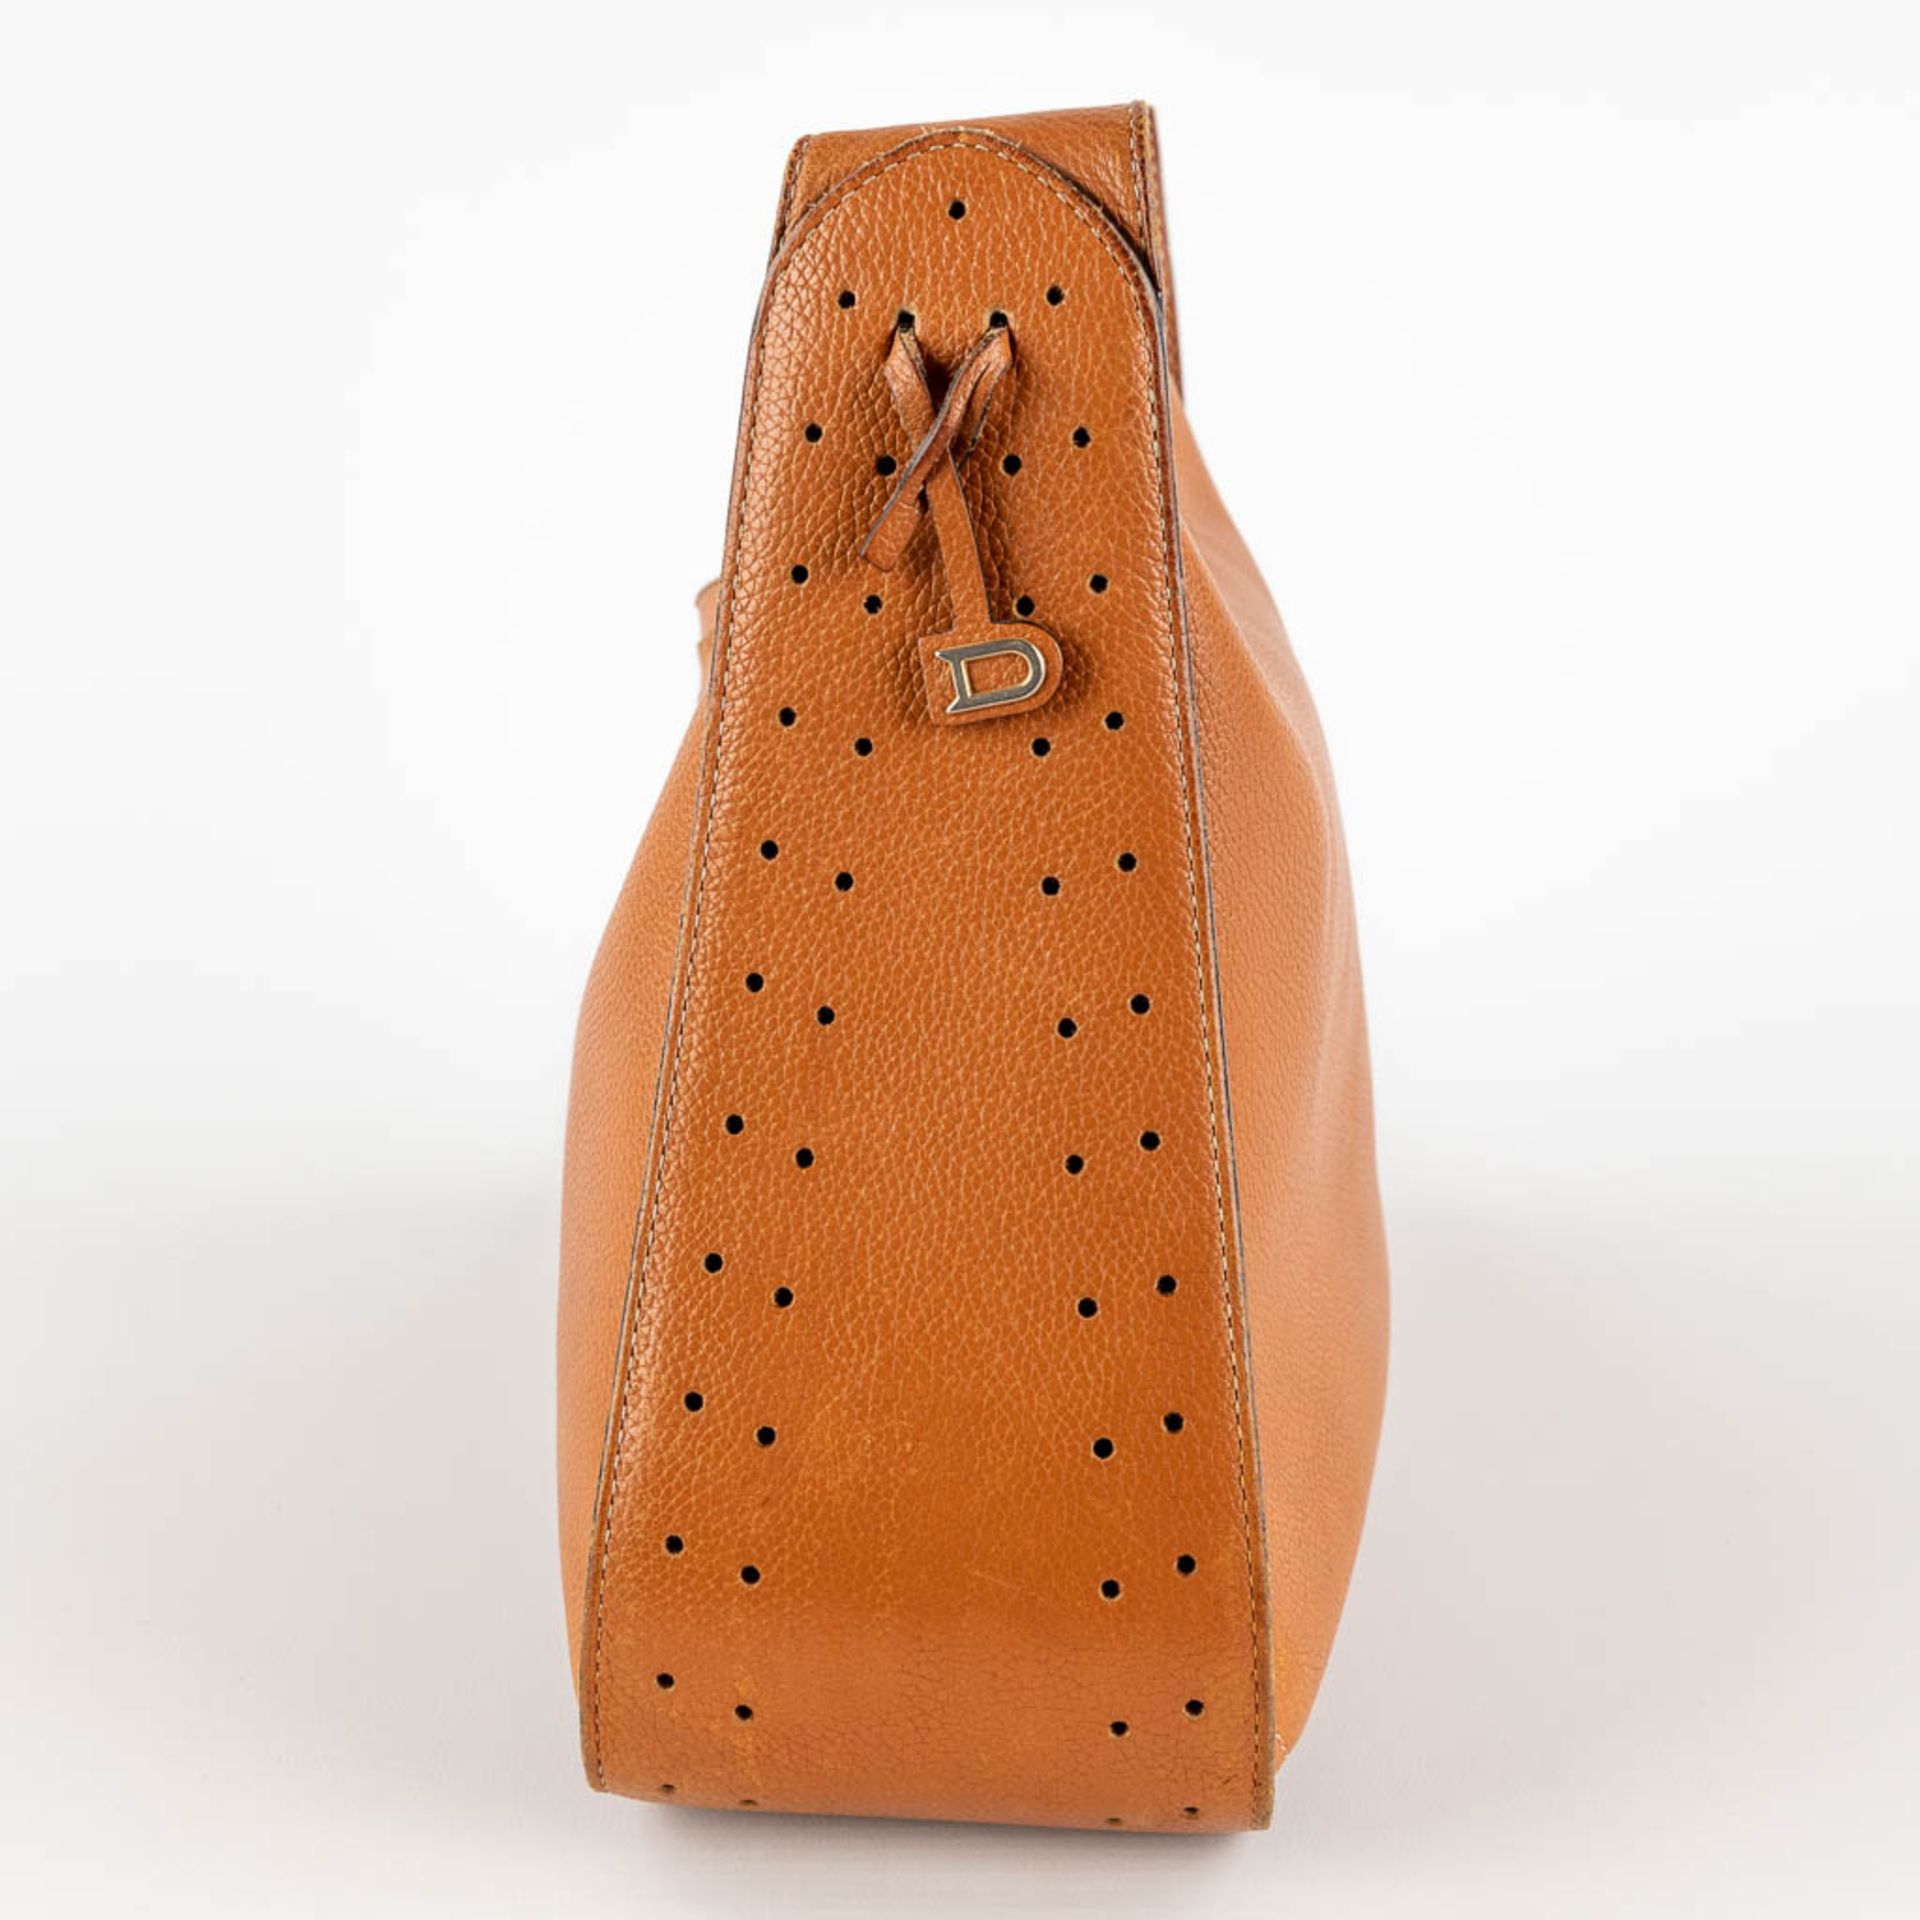 Delvaux, Pensée, a handbag made of brown leather. (W:24 x H:32 cm) - Bild 7 aus 18